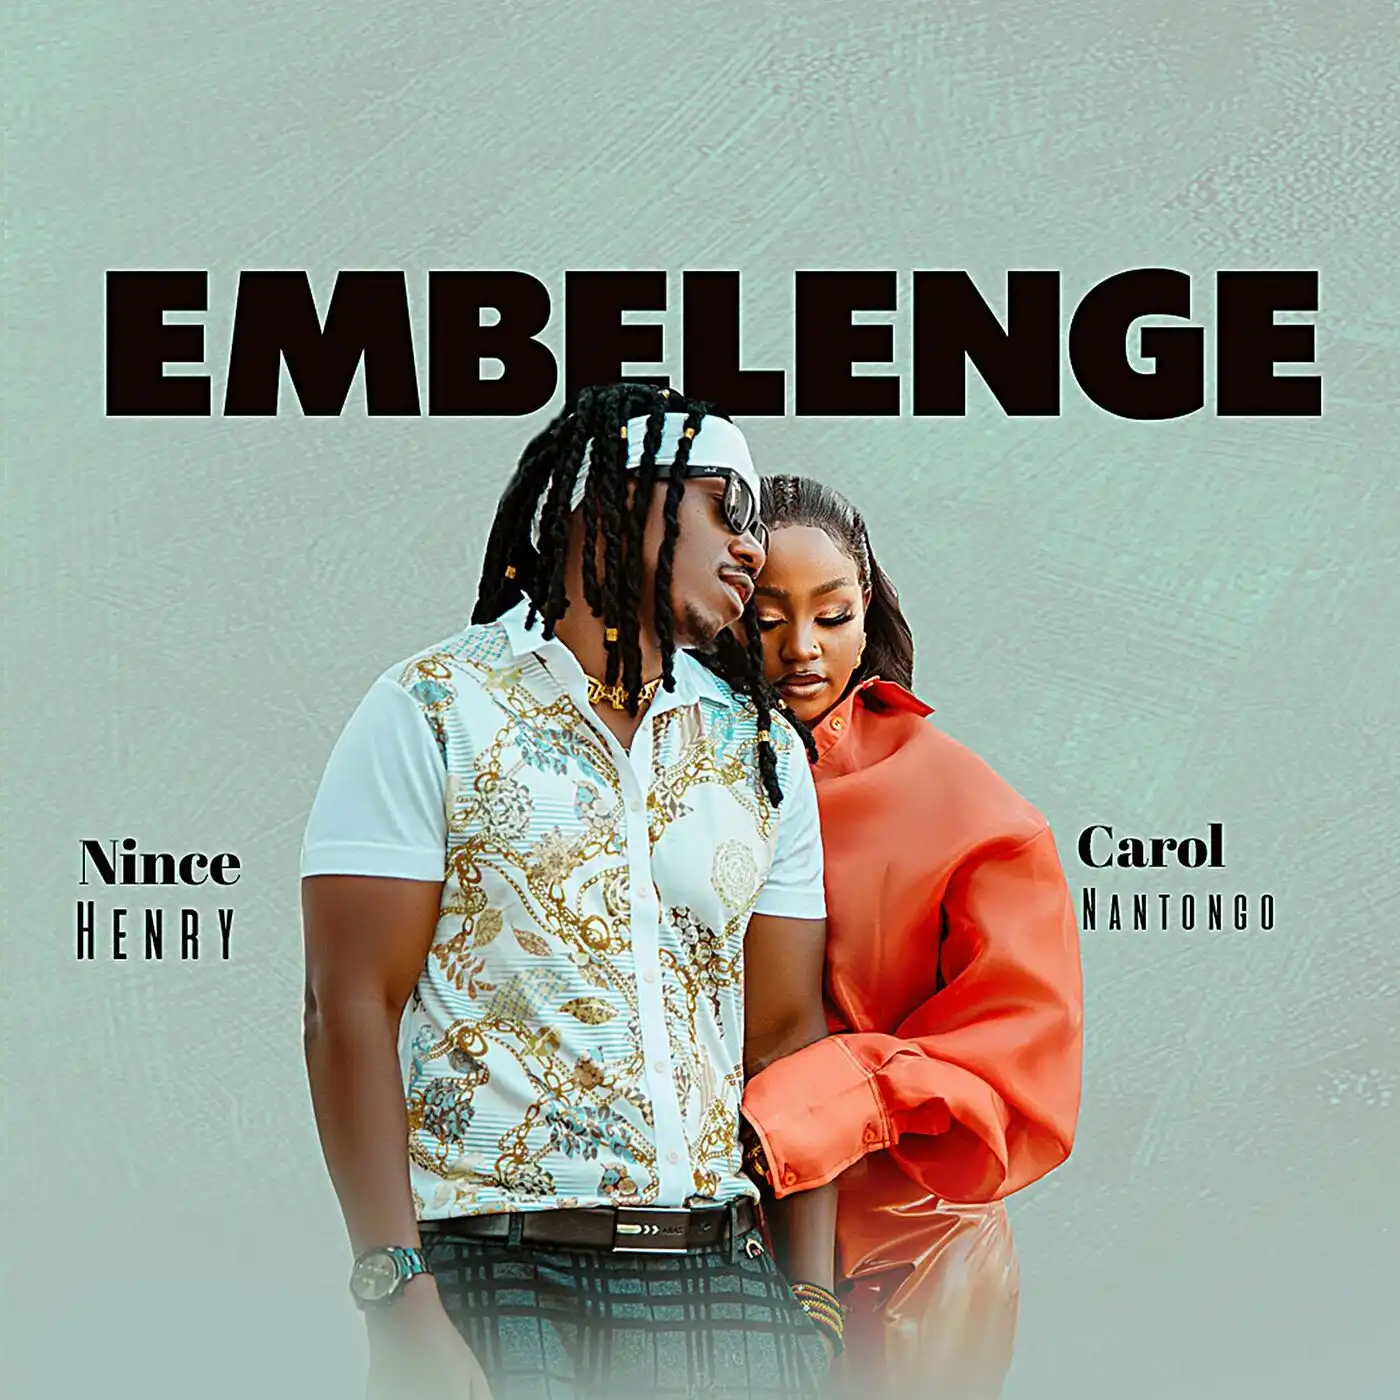 carol-nantongo-emberenge-album-cover